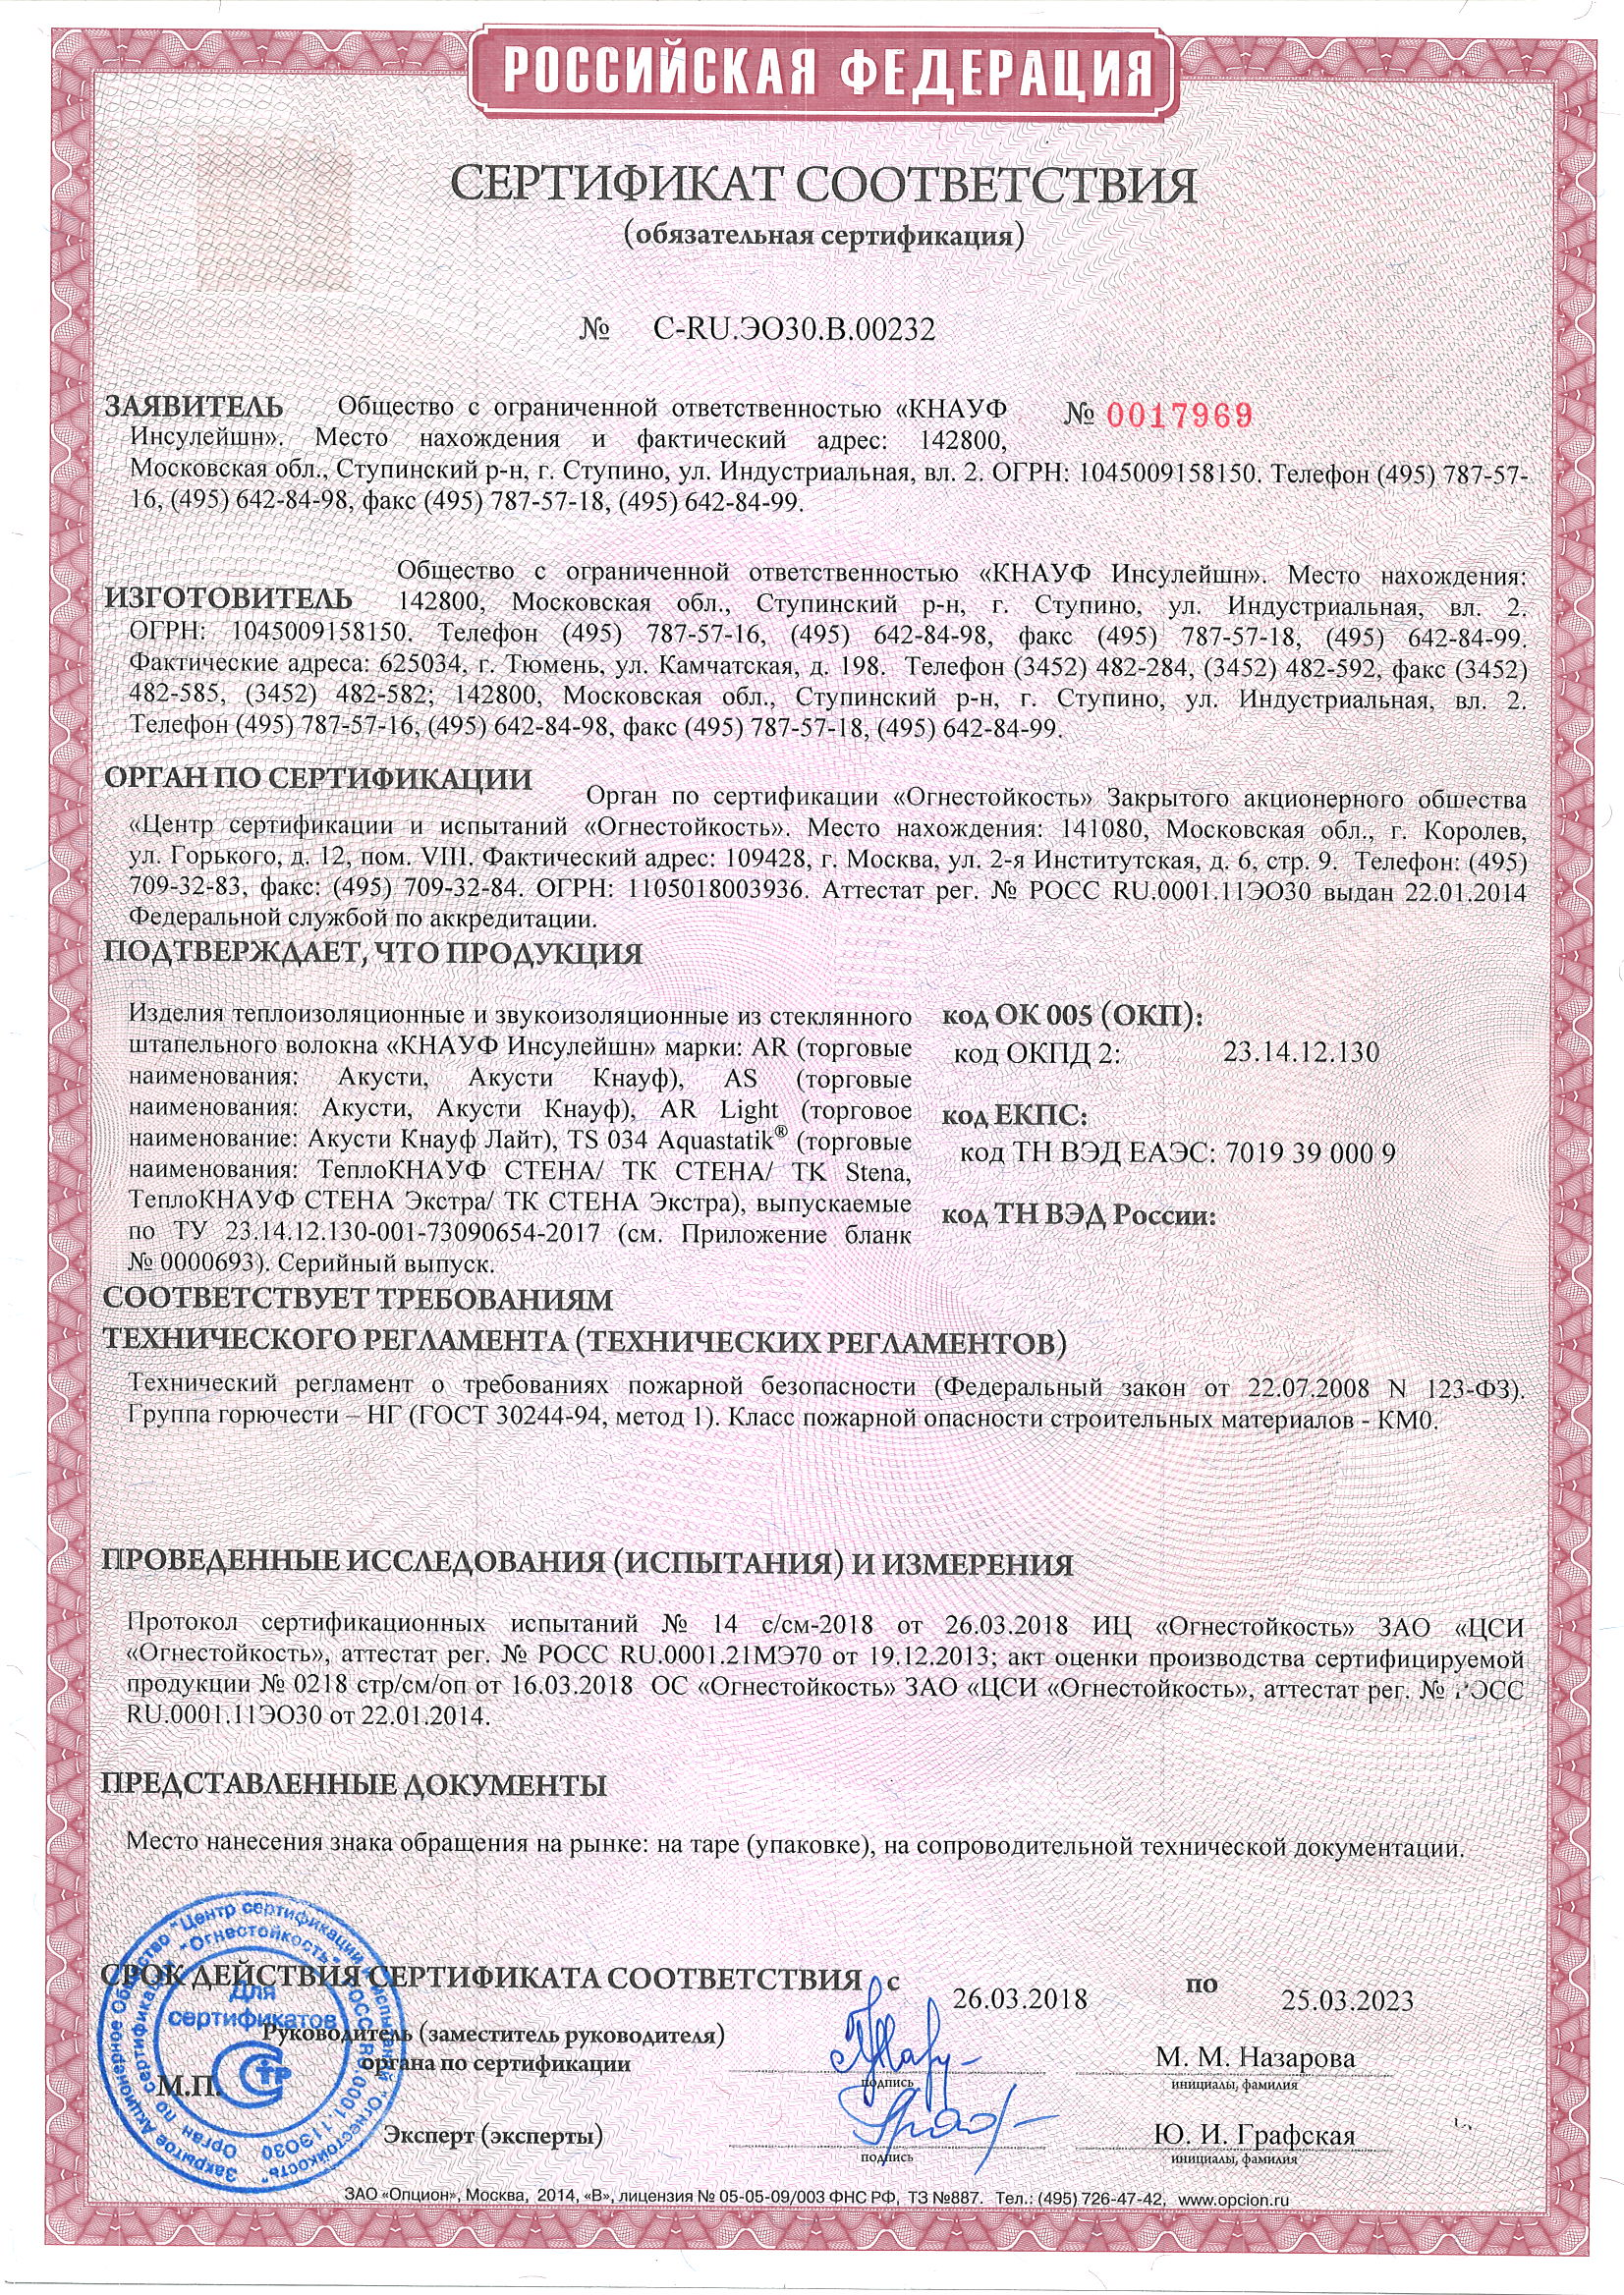 АкустиКНАУФ, АкустиКНАУФ Слим: Сертификат пожарной безопасности